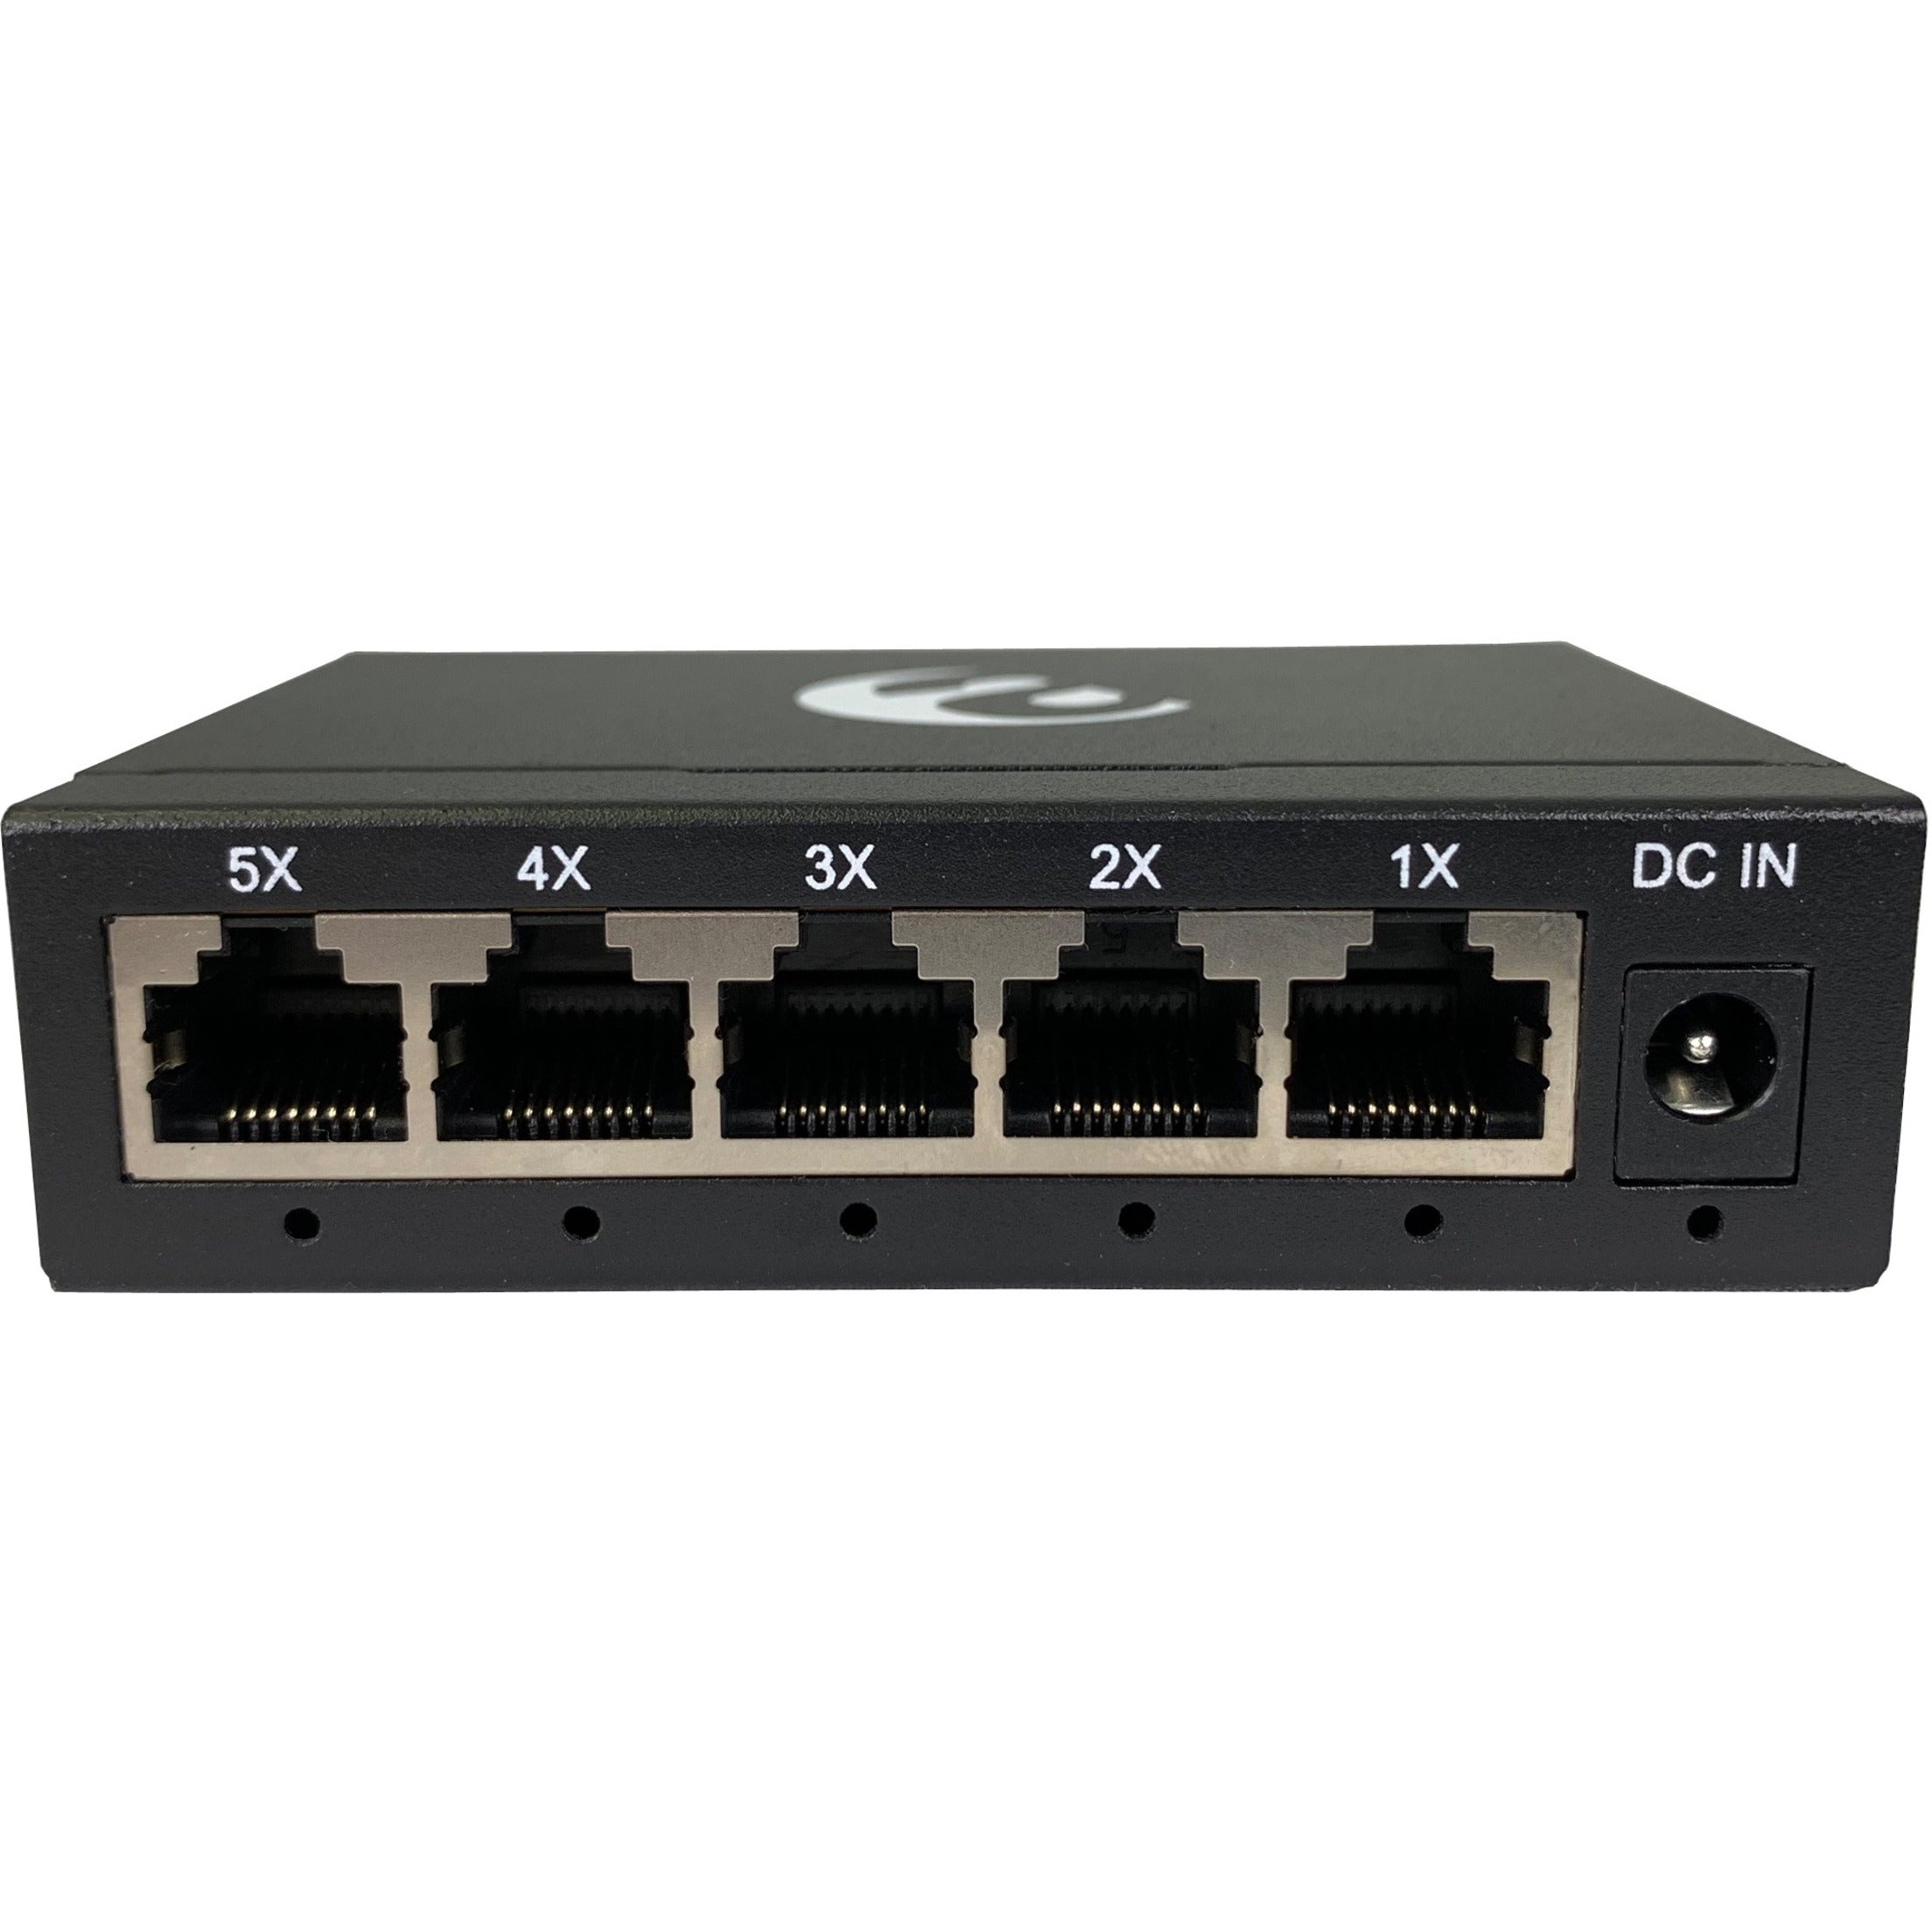 Amer SG5D V2 5 Port 10/100/1000 Mbps Gigabit Ethernet Desktop Metal Switch, 10Gbps Capacity, Wall Mount